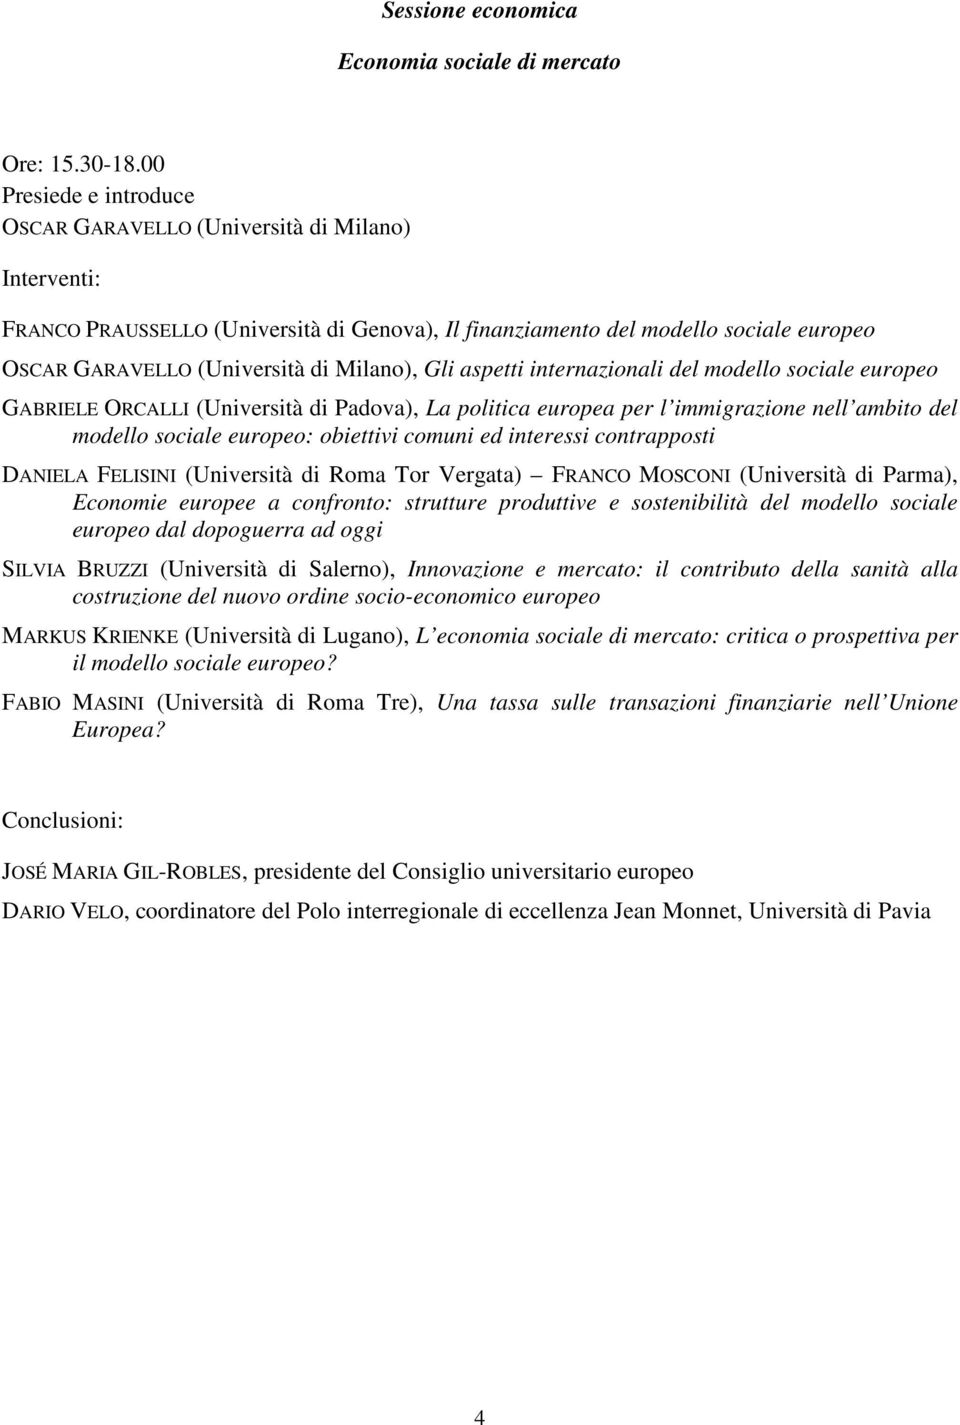 modello sociale europeo GABRIELE ORCALLI (Università di Padova), La politica europea per l immigrazione nell ambito del modello sociale europeo: obiettivi comuni ed interessi contrapposti DANIELA